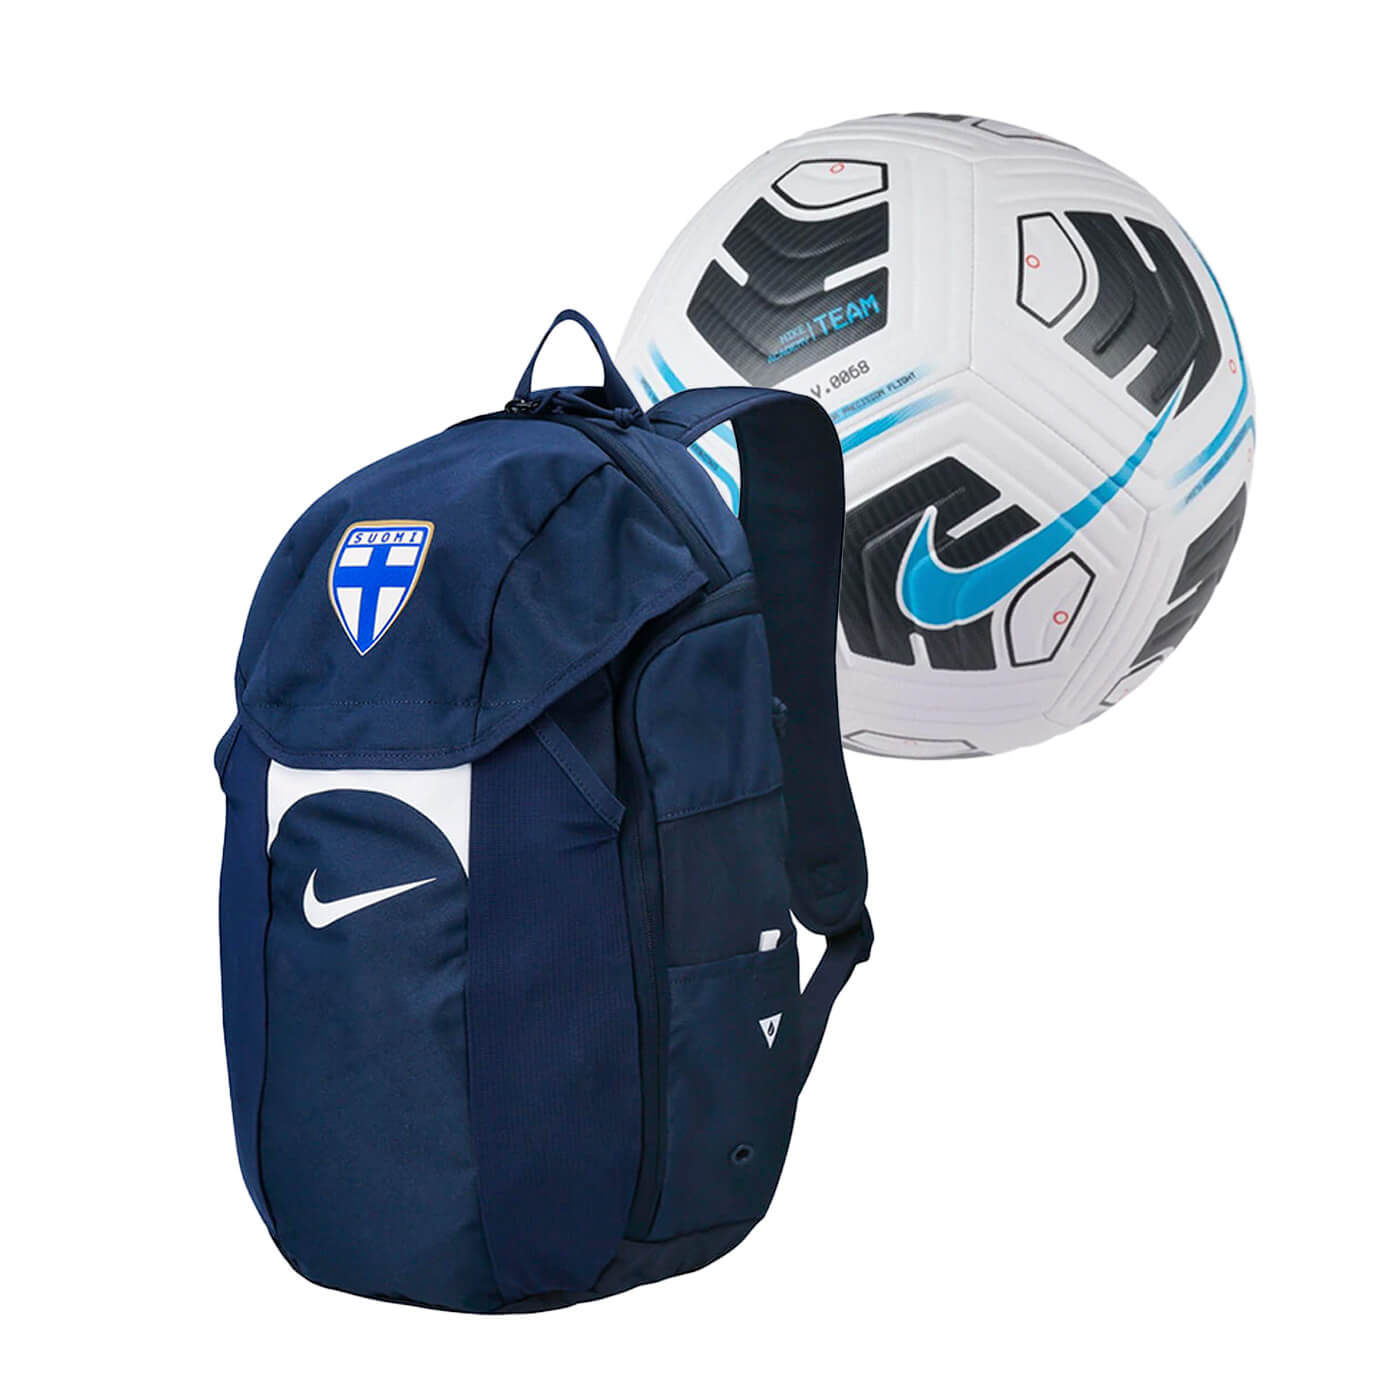 Academy Team Storm-FIT football backpack + Academy Team football